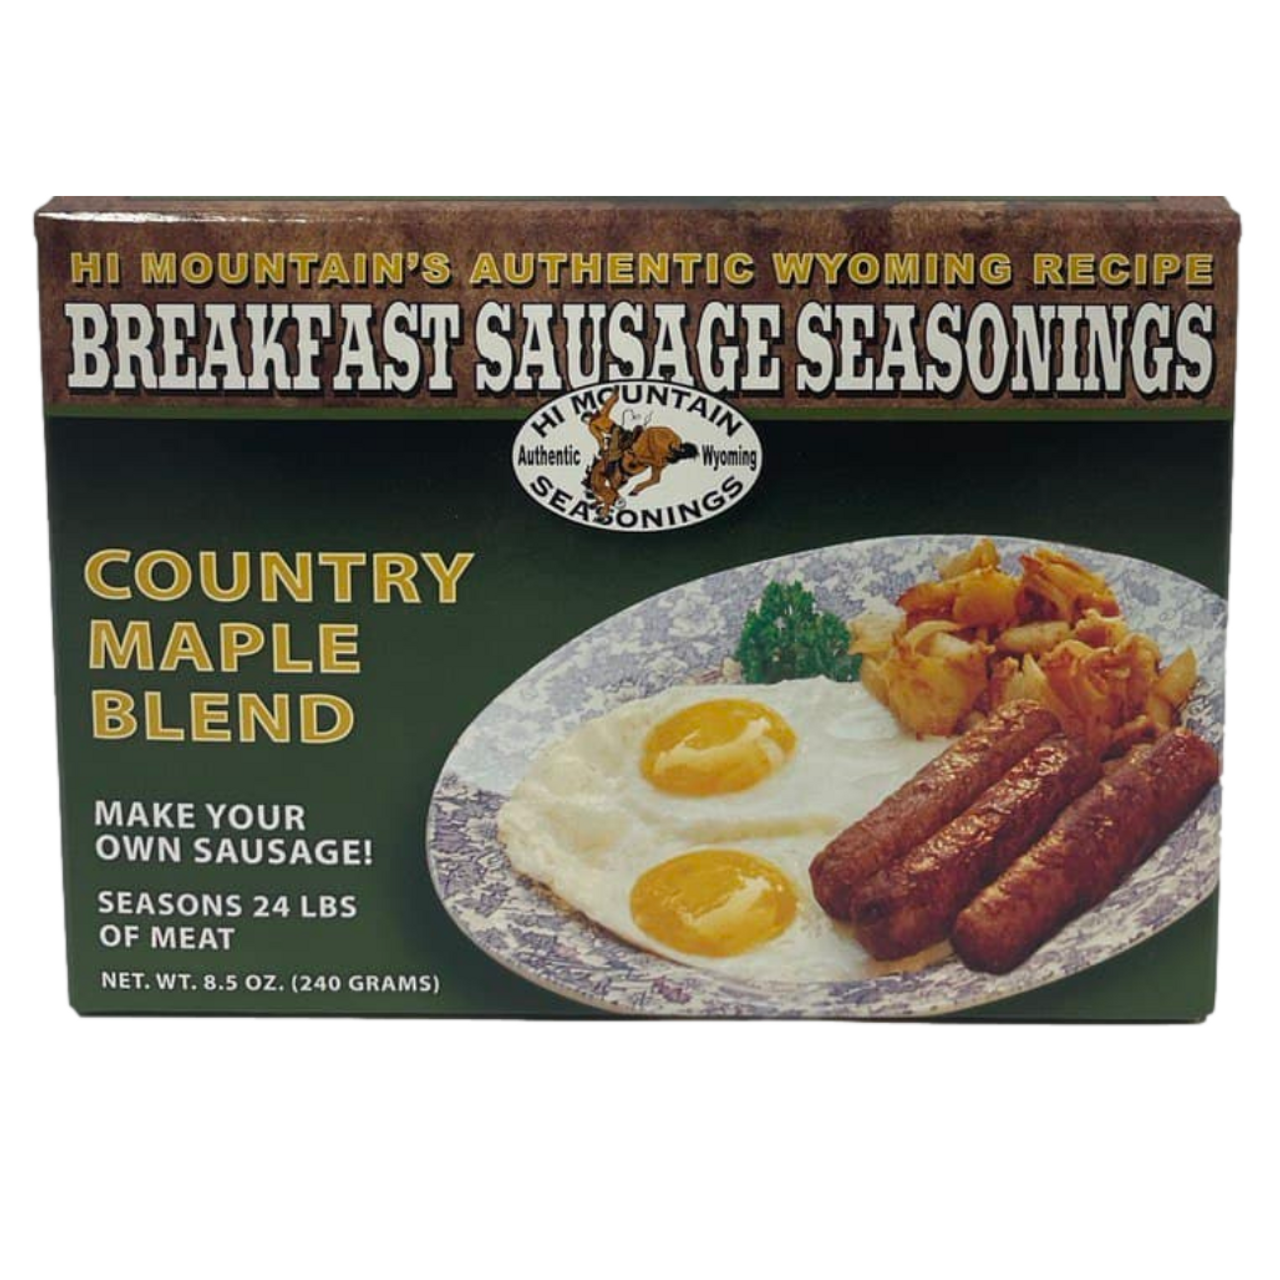 Hi Mountain Breakfast Sausage Seasonings Country Maple Blend